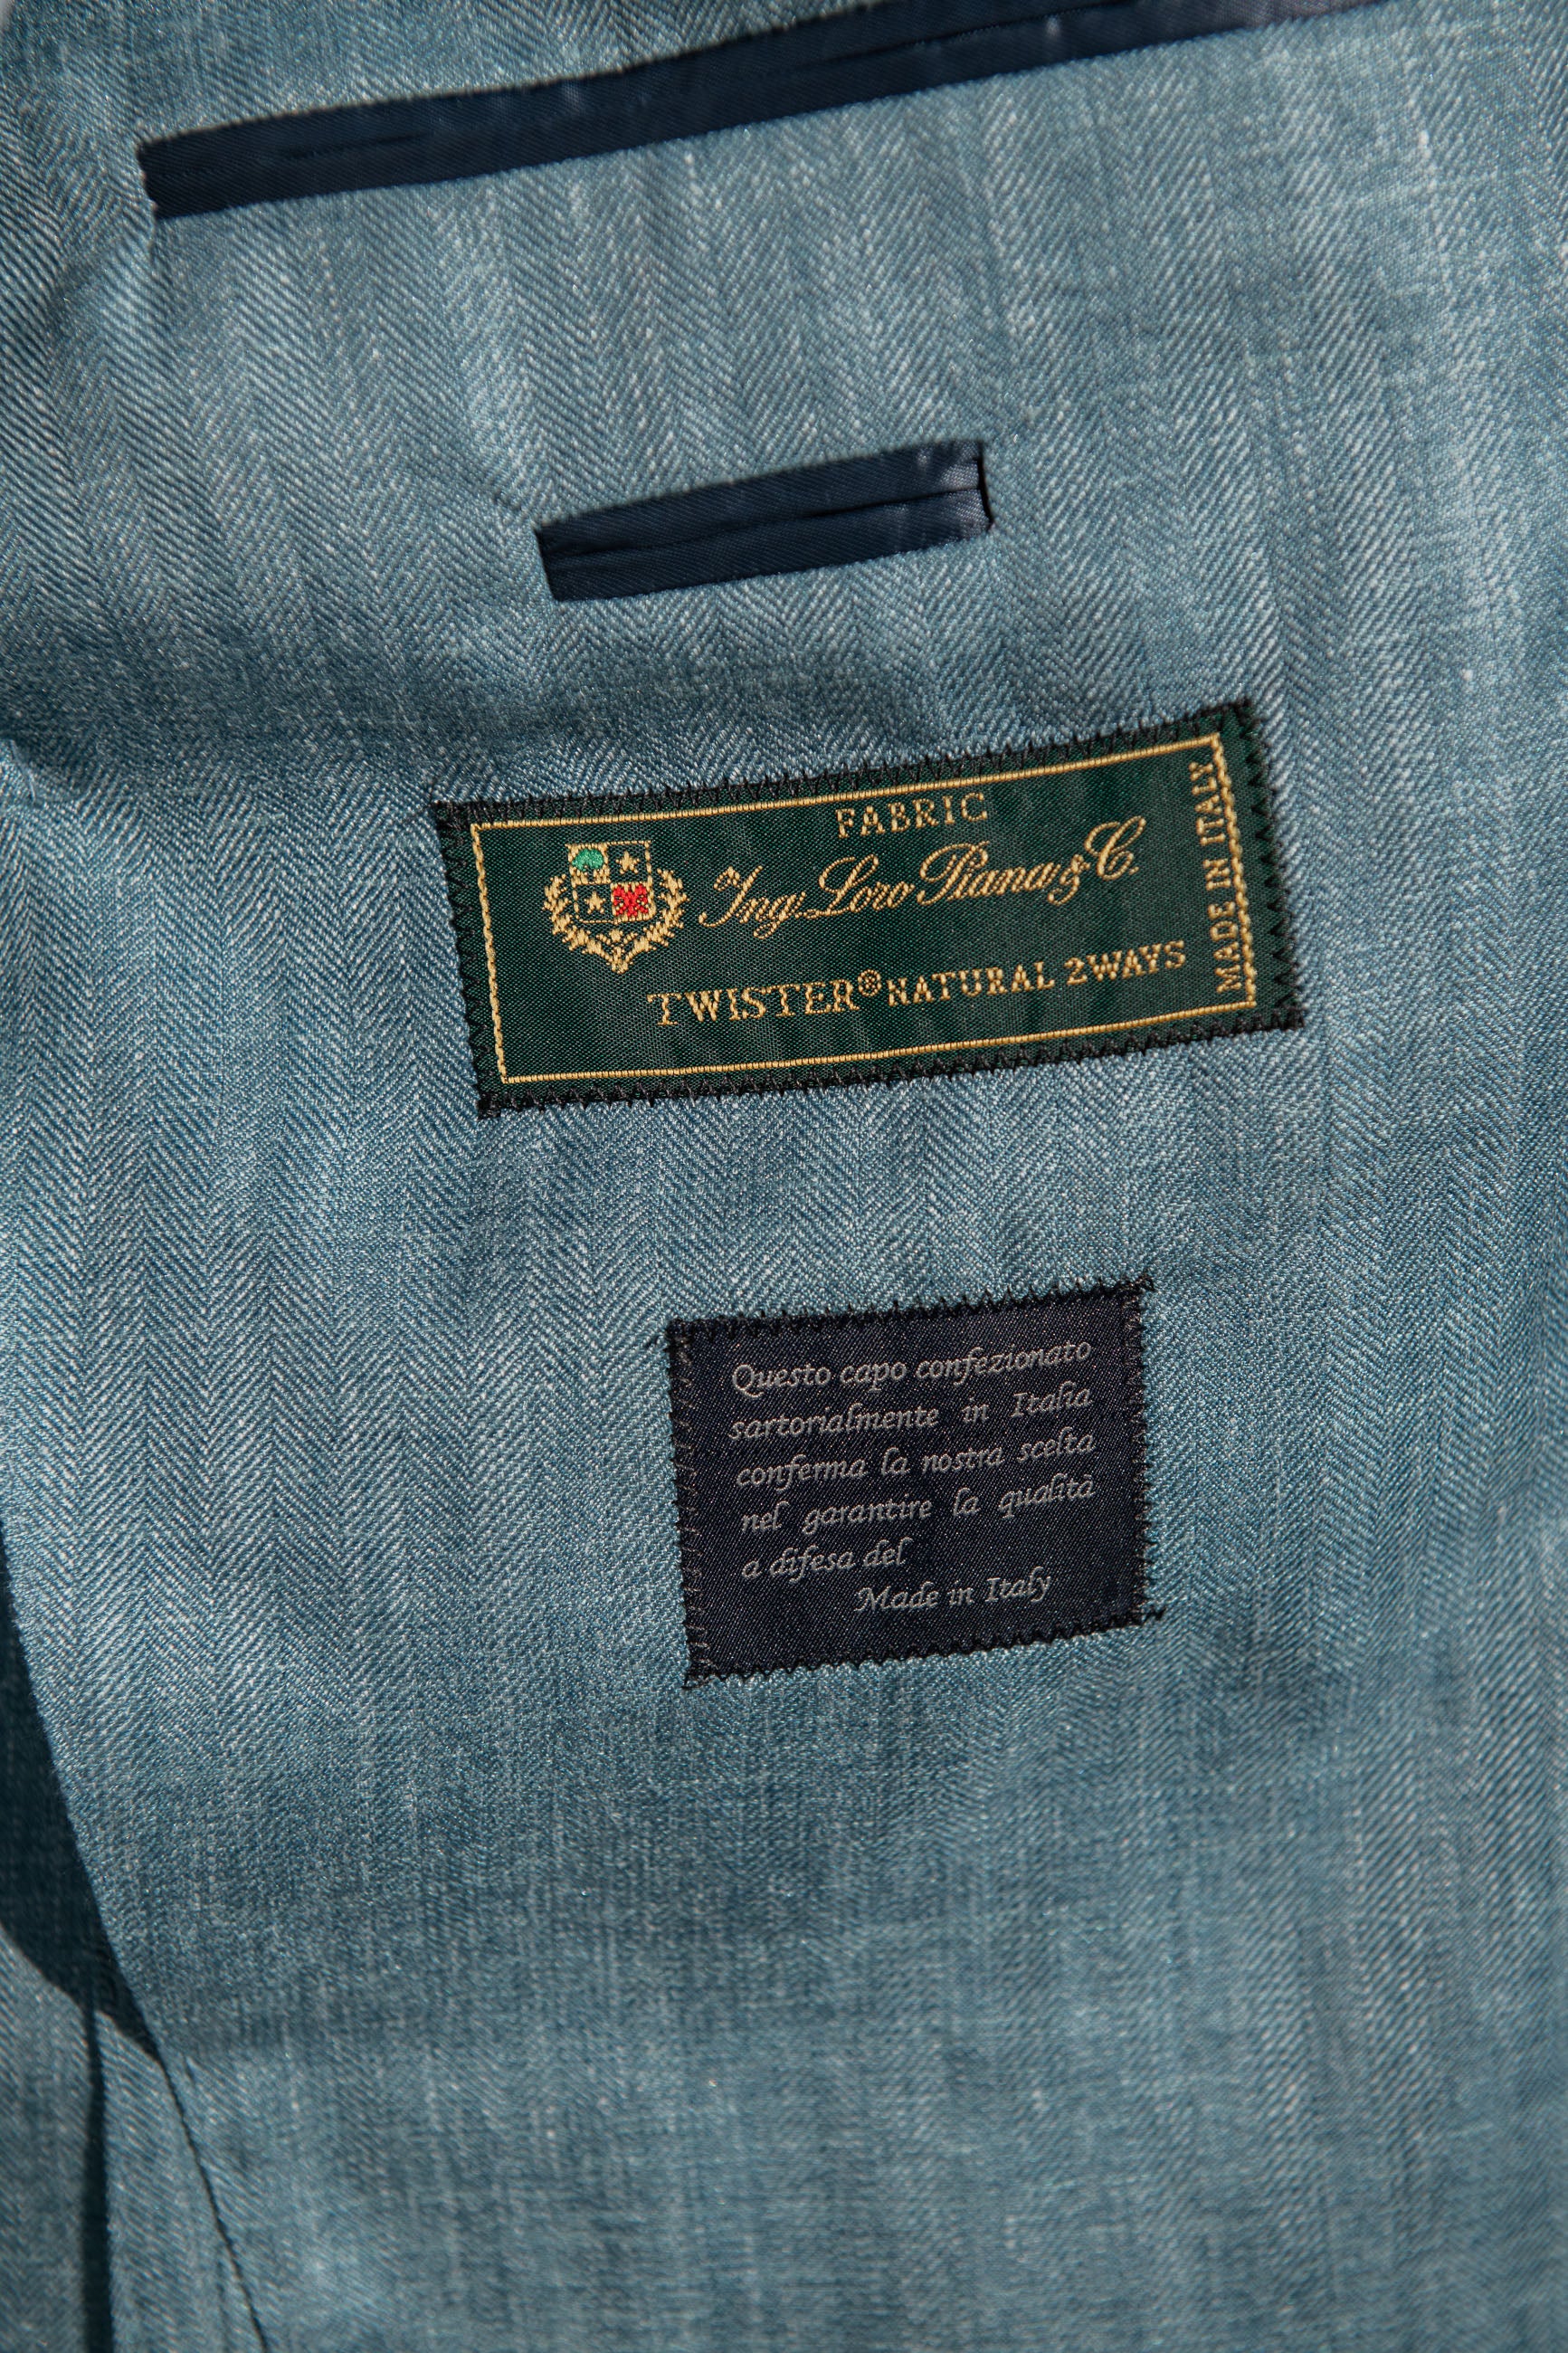 Giacca Safari verde acqua in lana seta e lino Loro Piana – Made in Italy